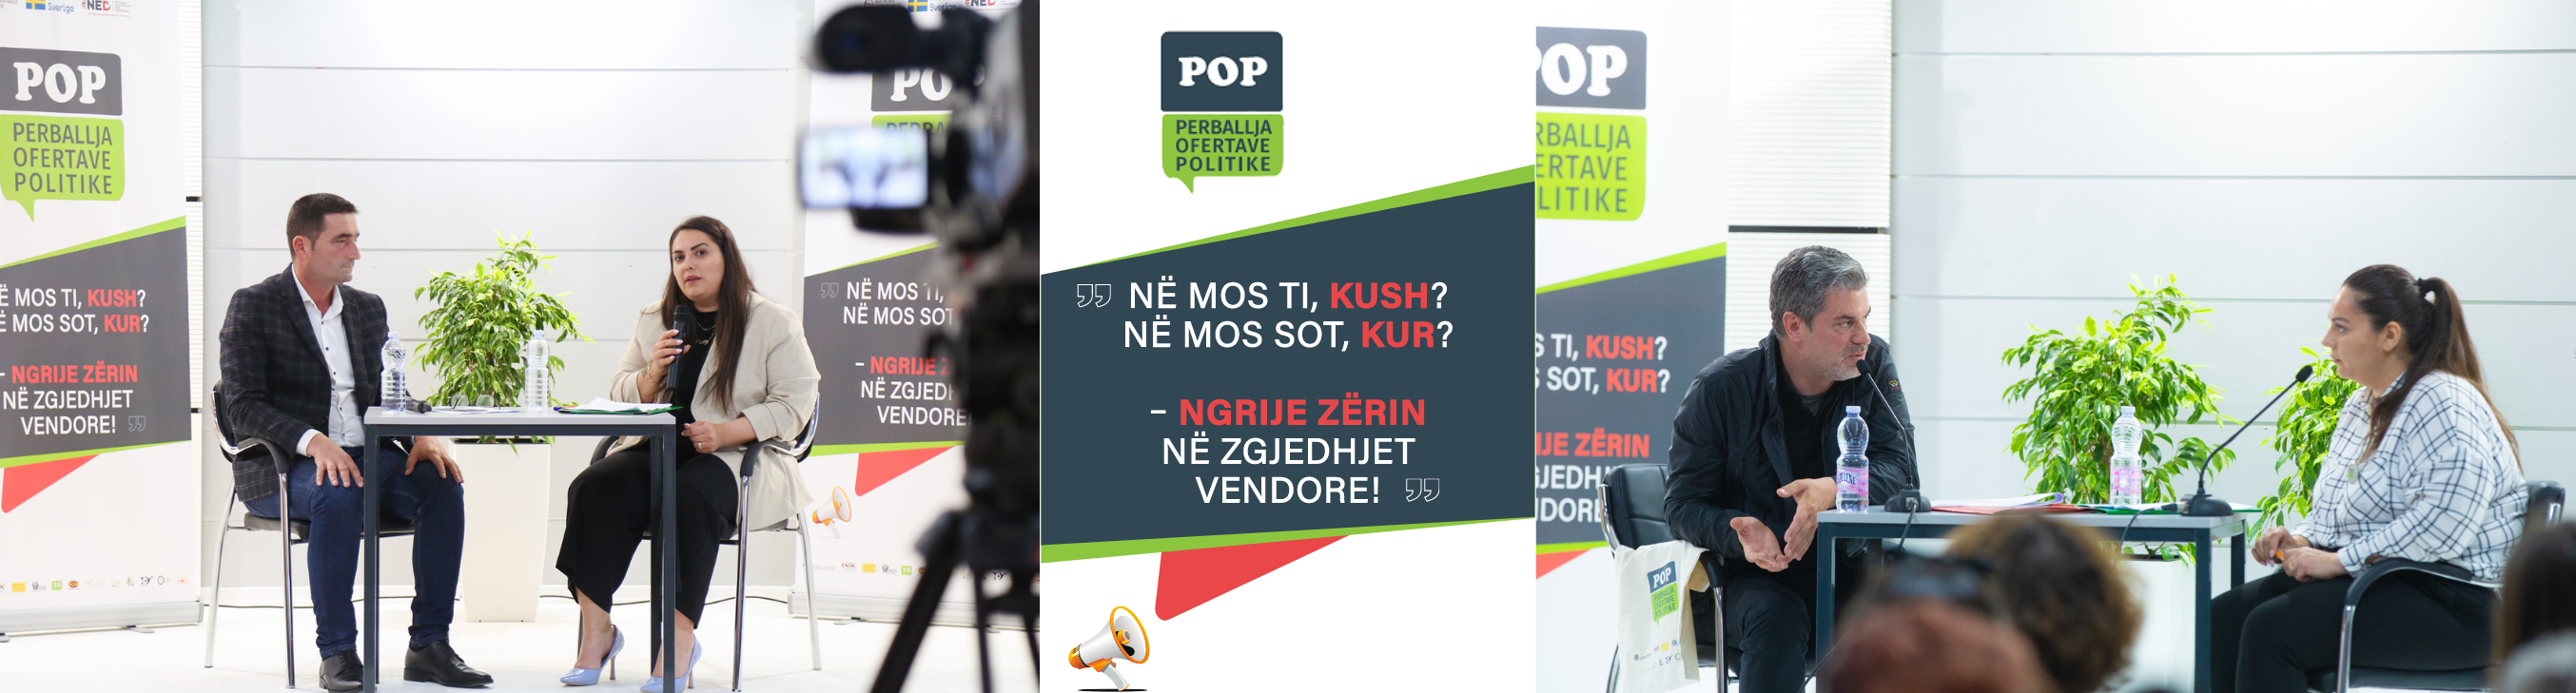 Pop Network Albania